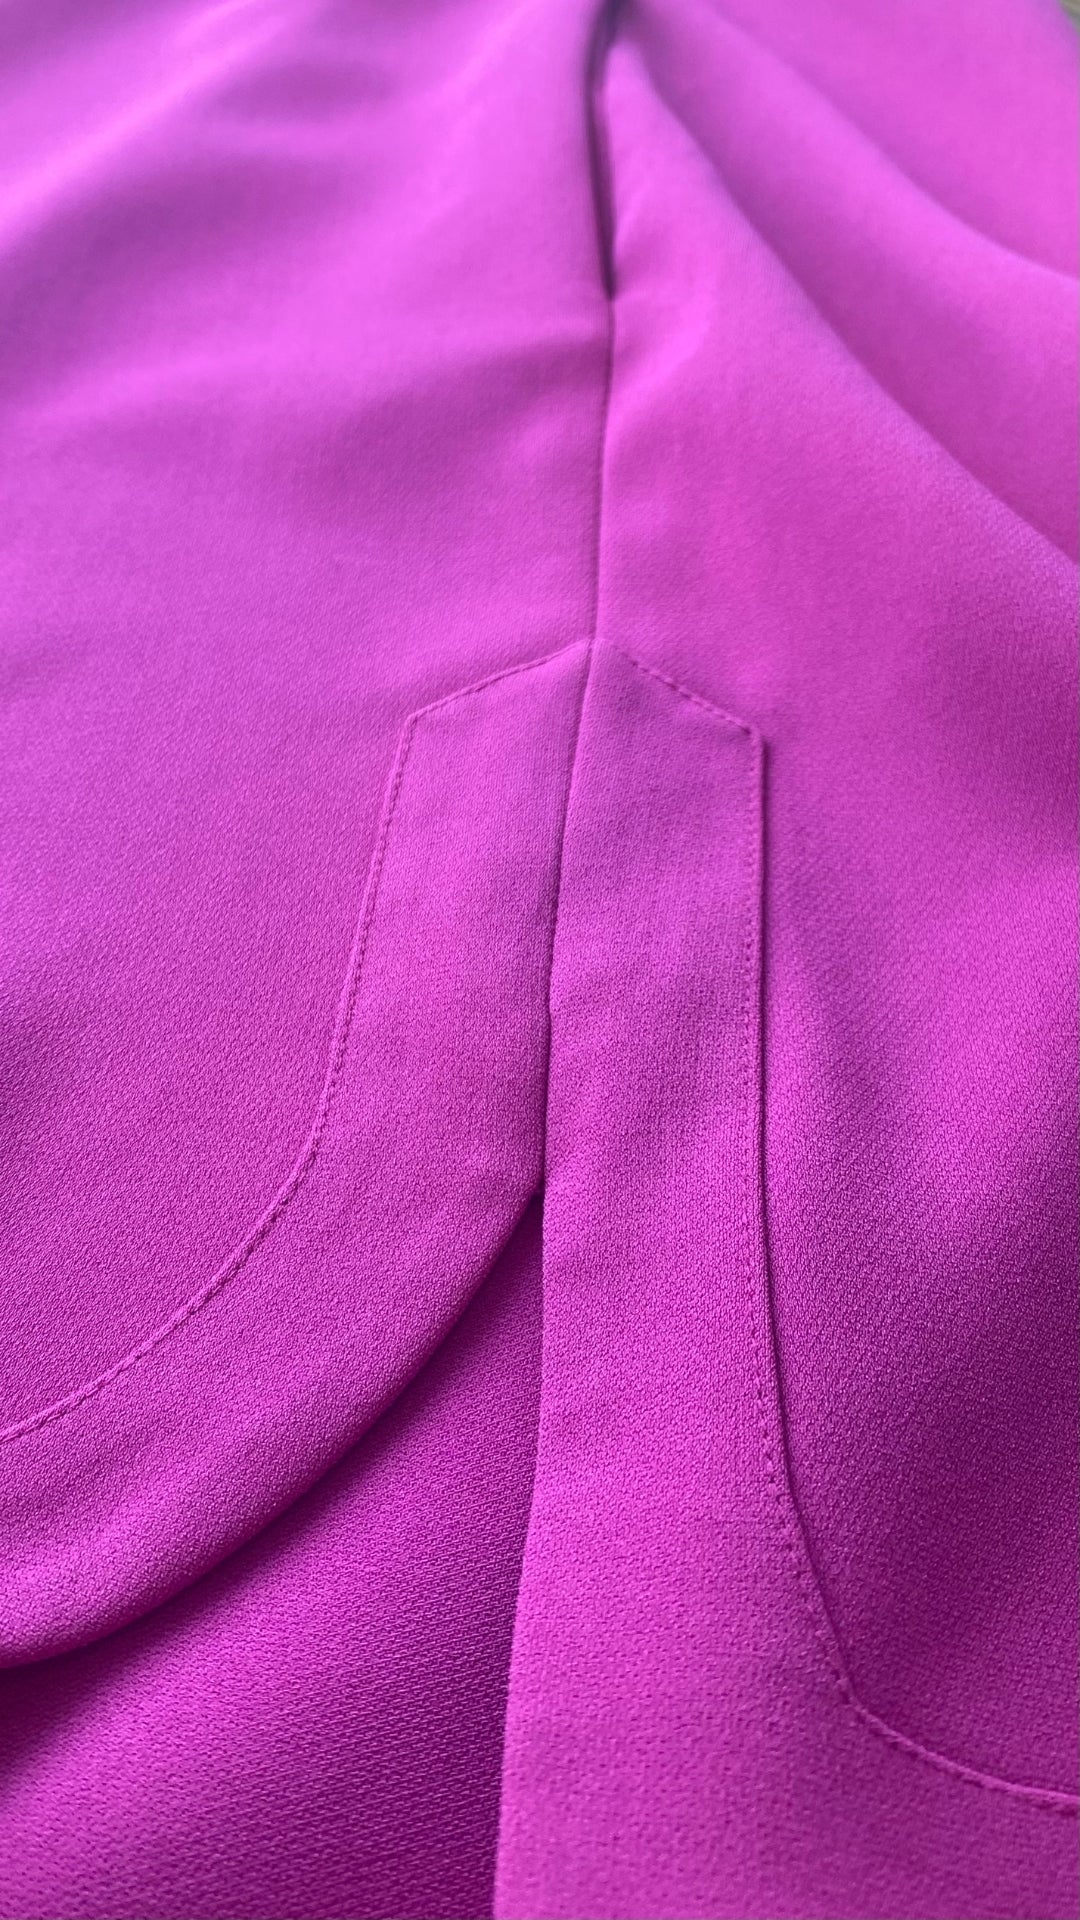 Robe ample avec poches et boutons argentés aux épaules, Diane von Furstenberg, taille 10. Vue de l'ourlet de côté.